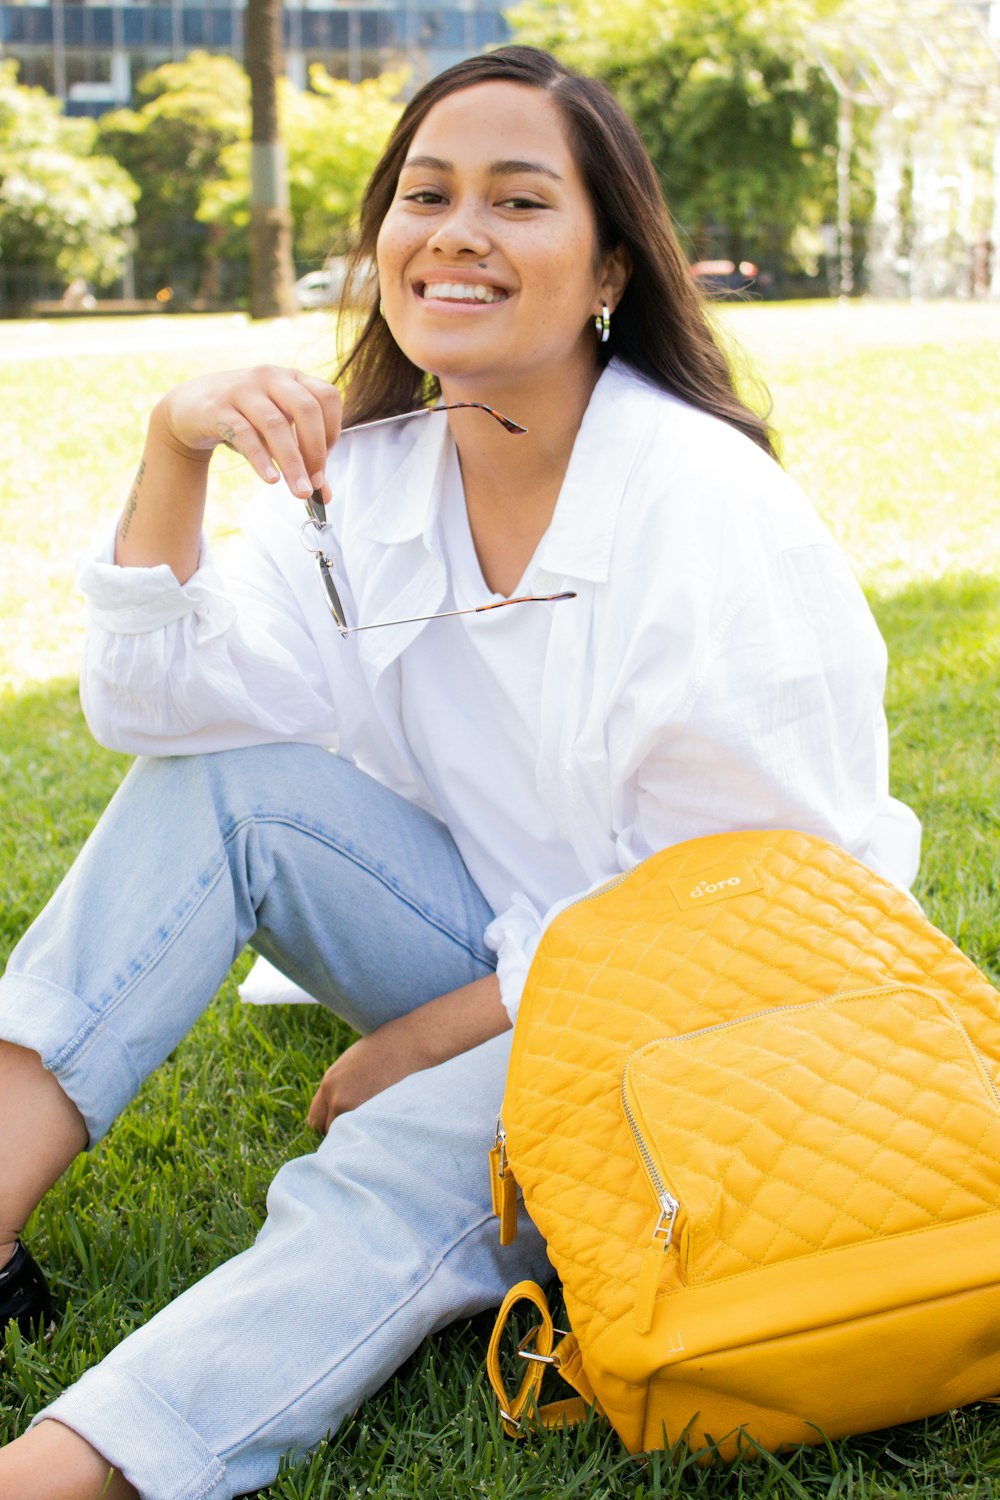 하얀 드레스 셔츠와 푸른 데님 청바지를 입은 여자가 낮 동안 푸른 잔디밭��에 앉아 있다